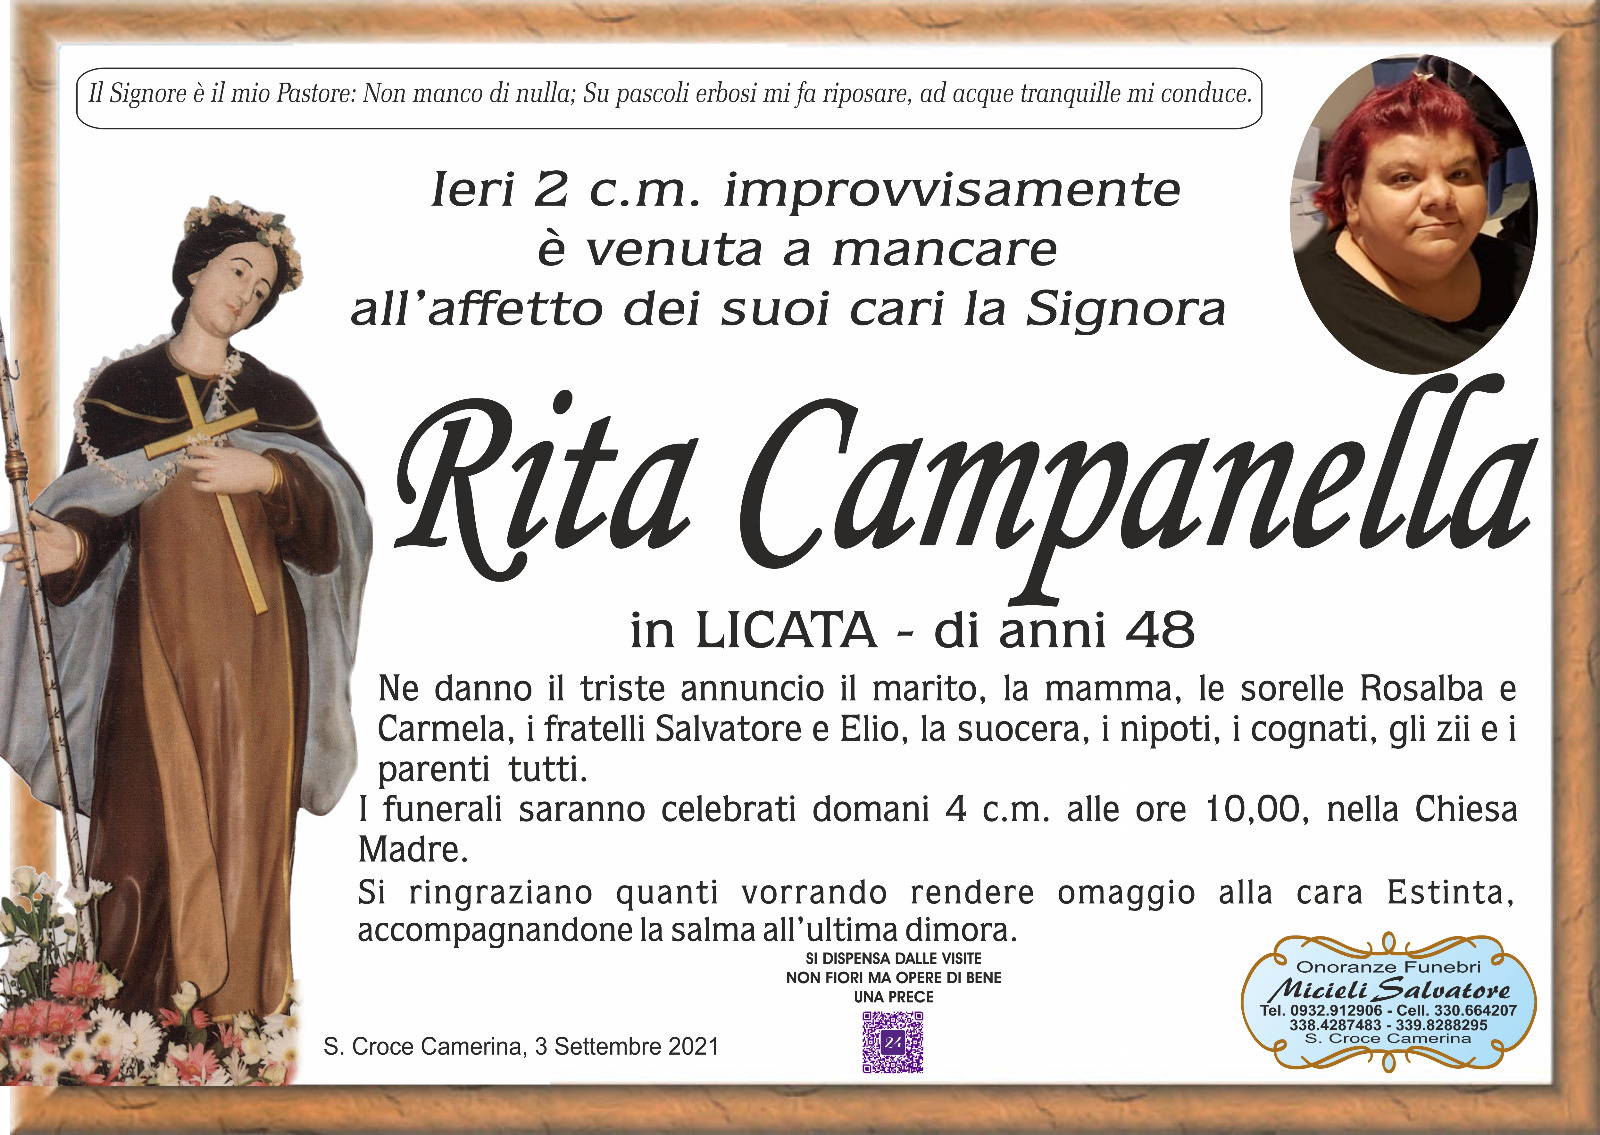 Rita Campanella